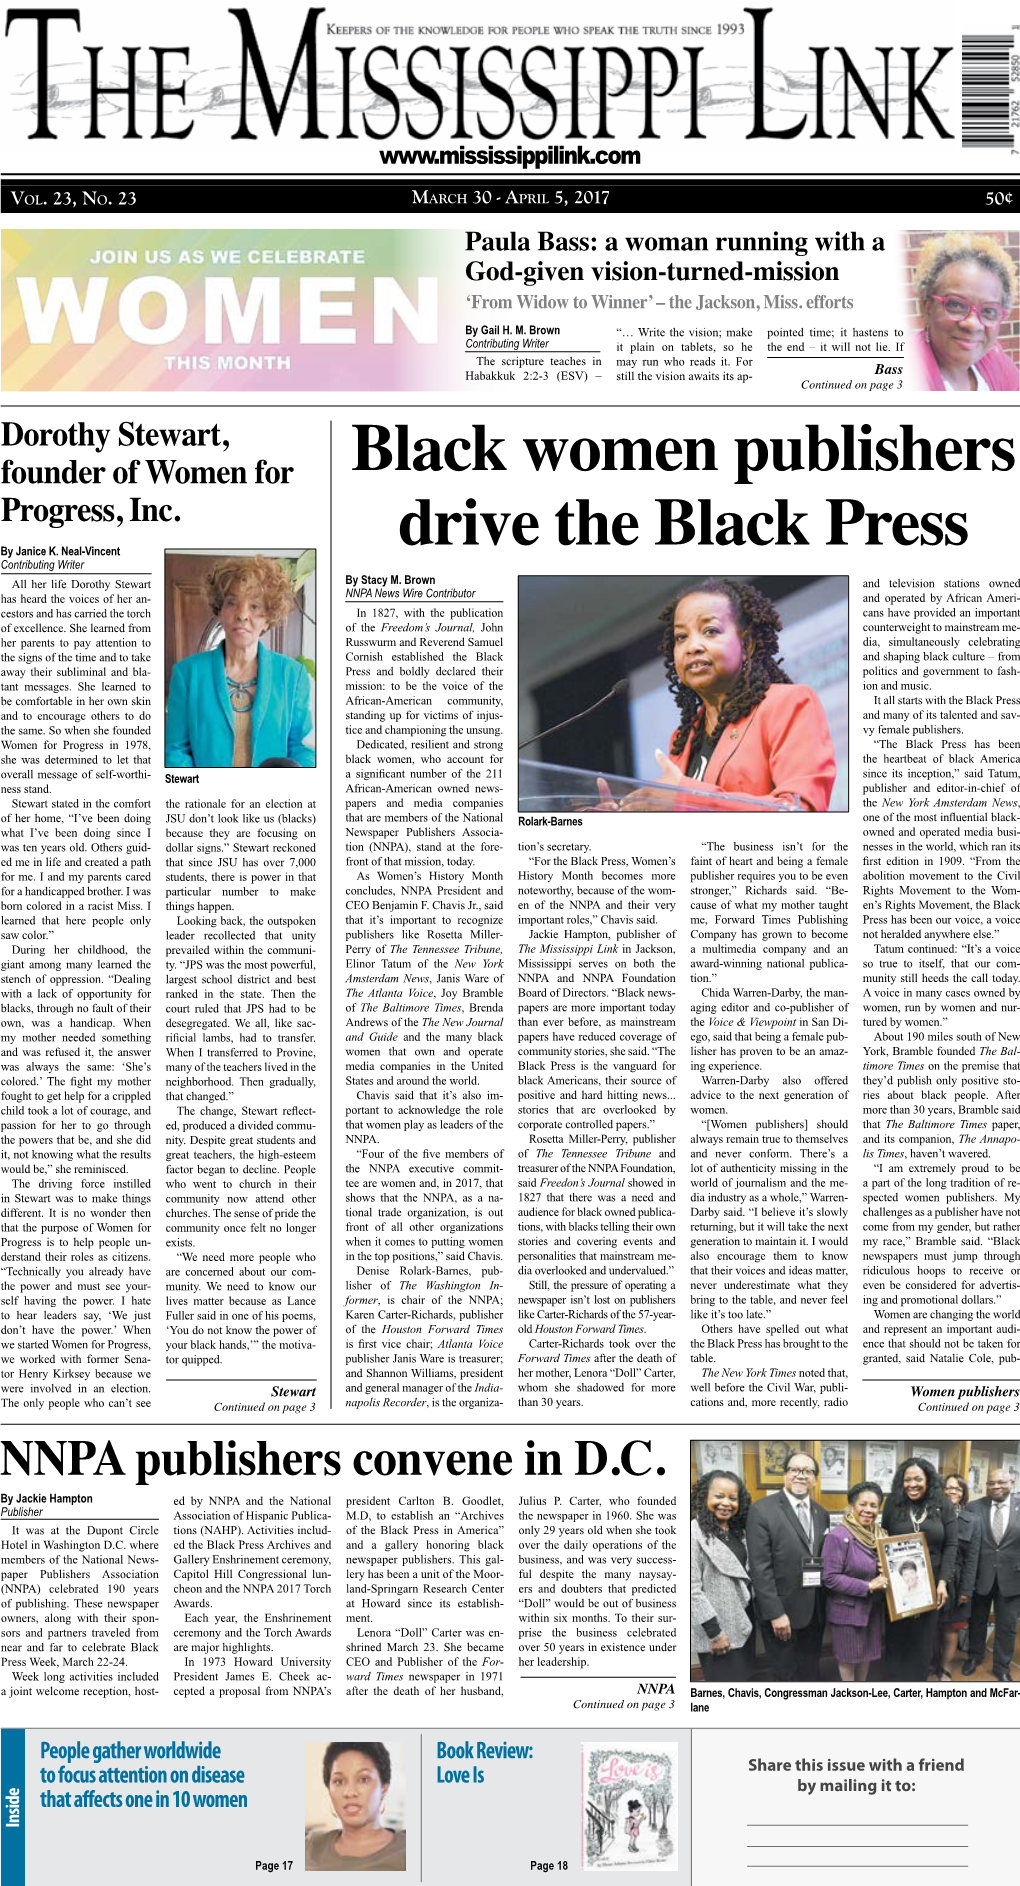 Black Women Publishers Drive the Black Press